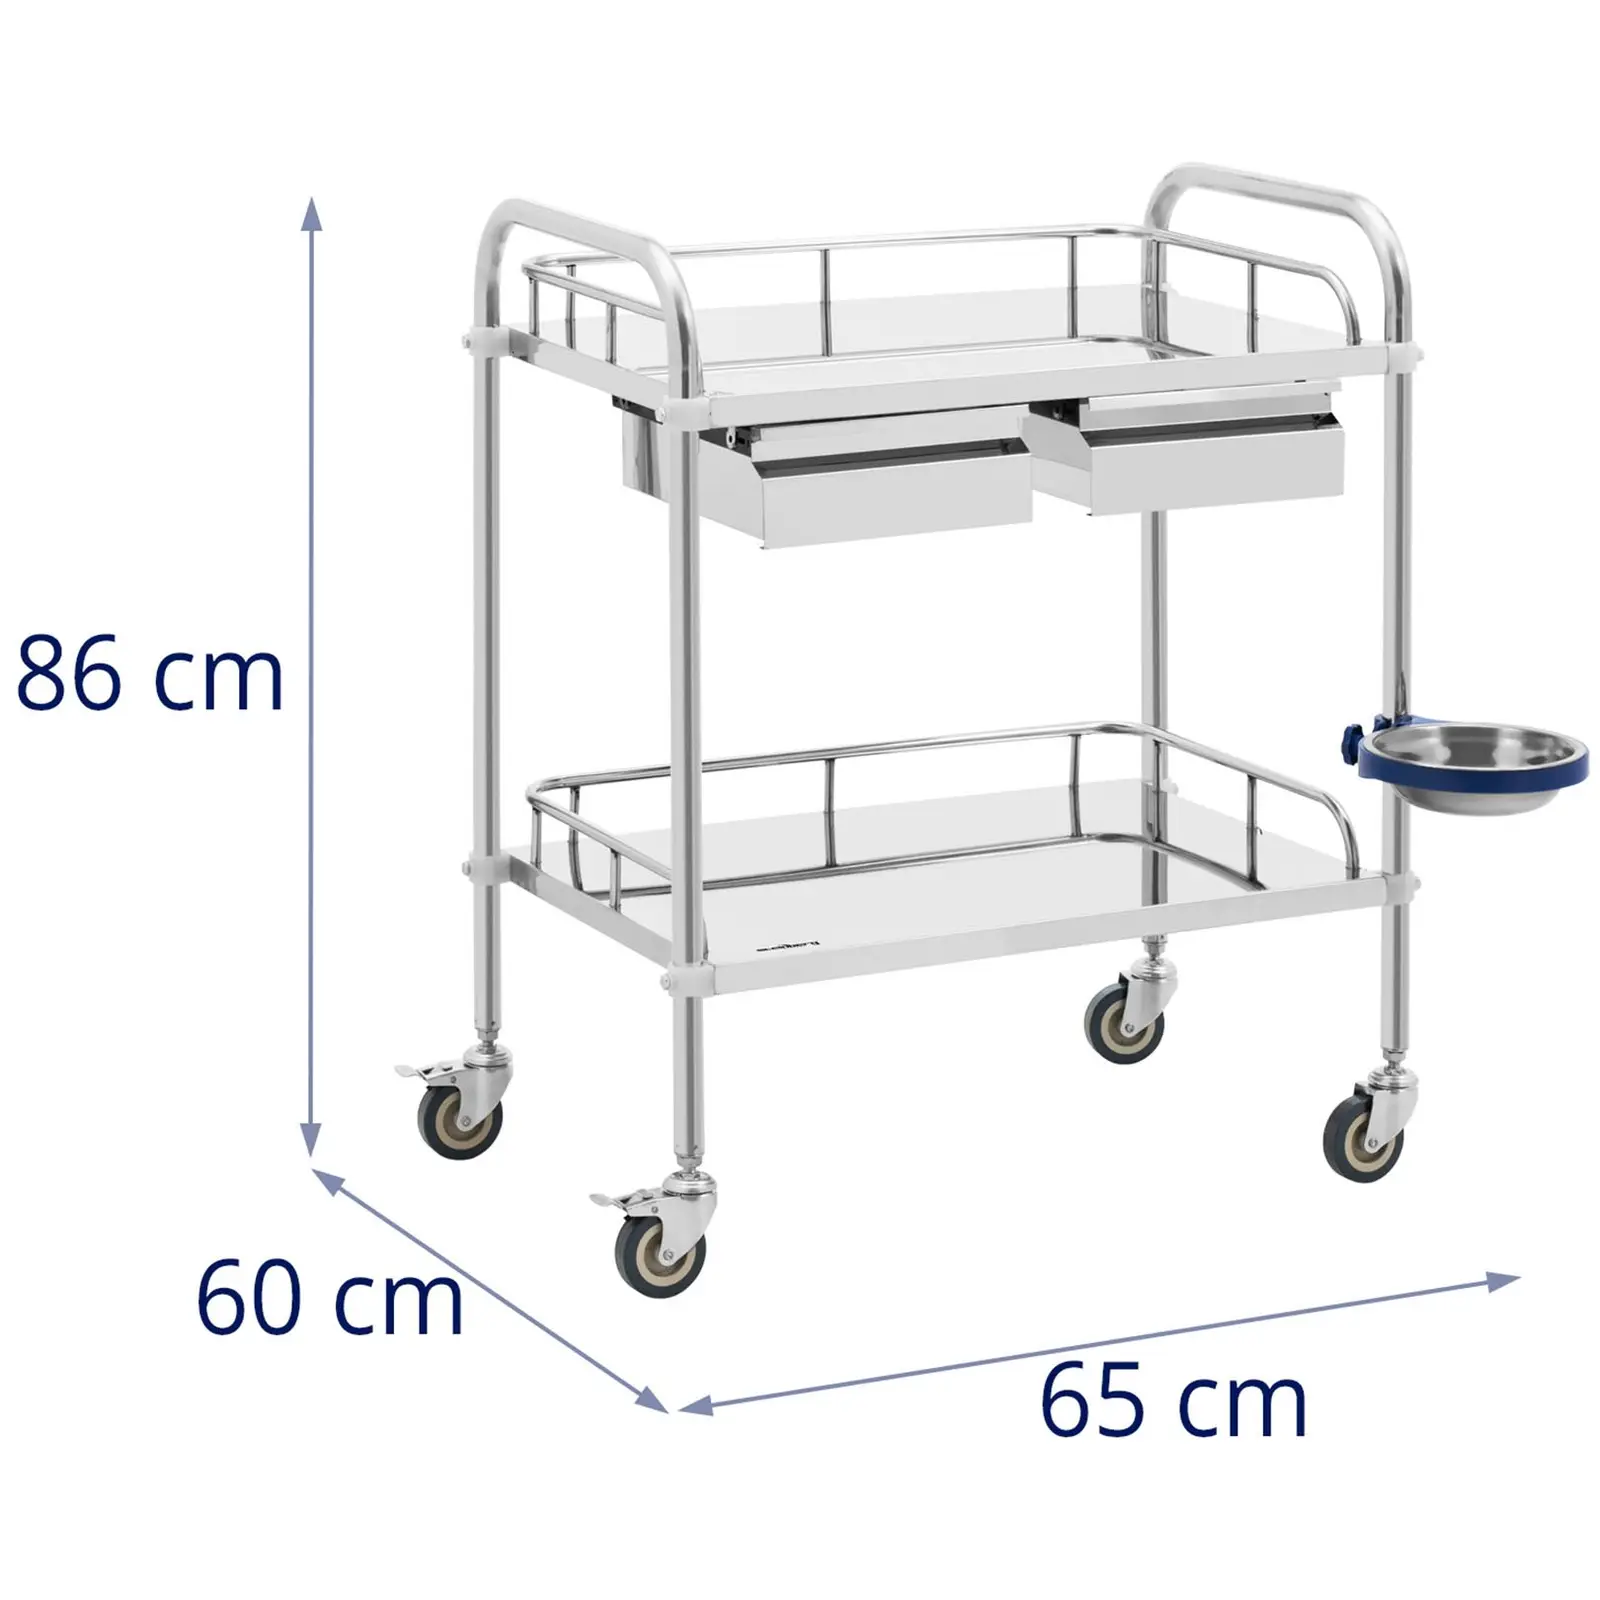 Лабораторна количка - неръждаема стомана - 2 рафта, всеки с размери 55 x 37 x 13 см - 2 чекмеджета - 20 кг